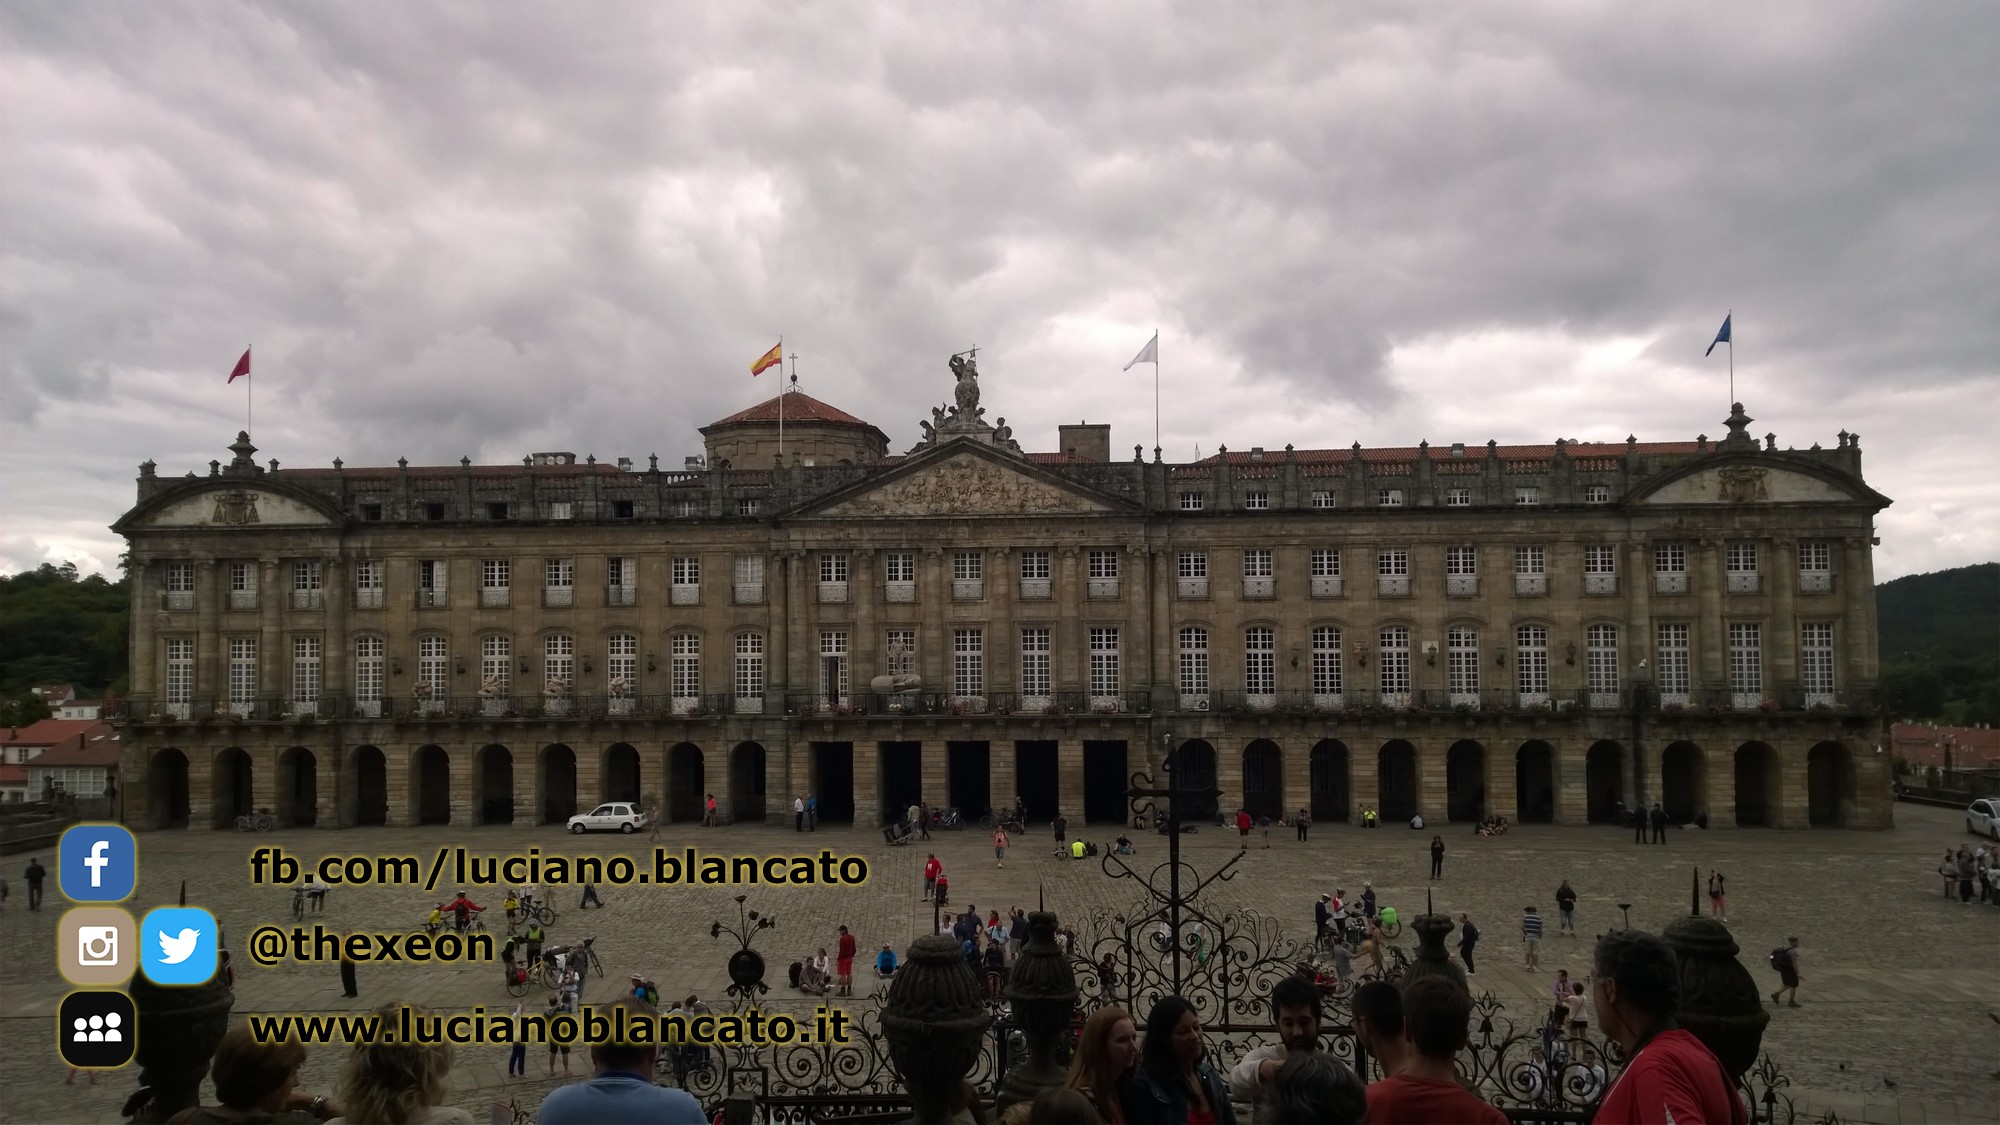 Santiago de Compostela - Pazo de Raxoi